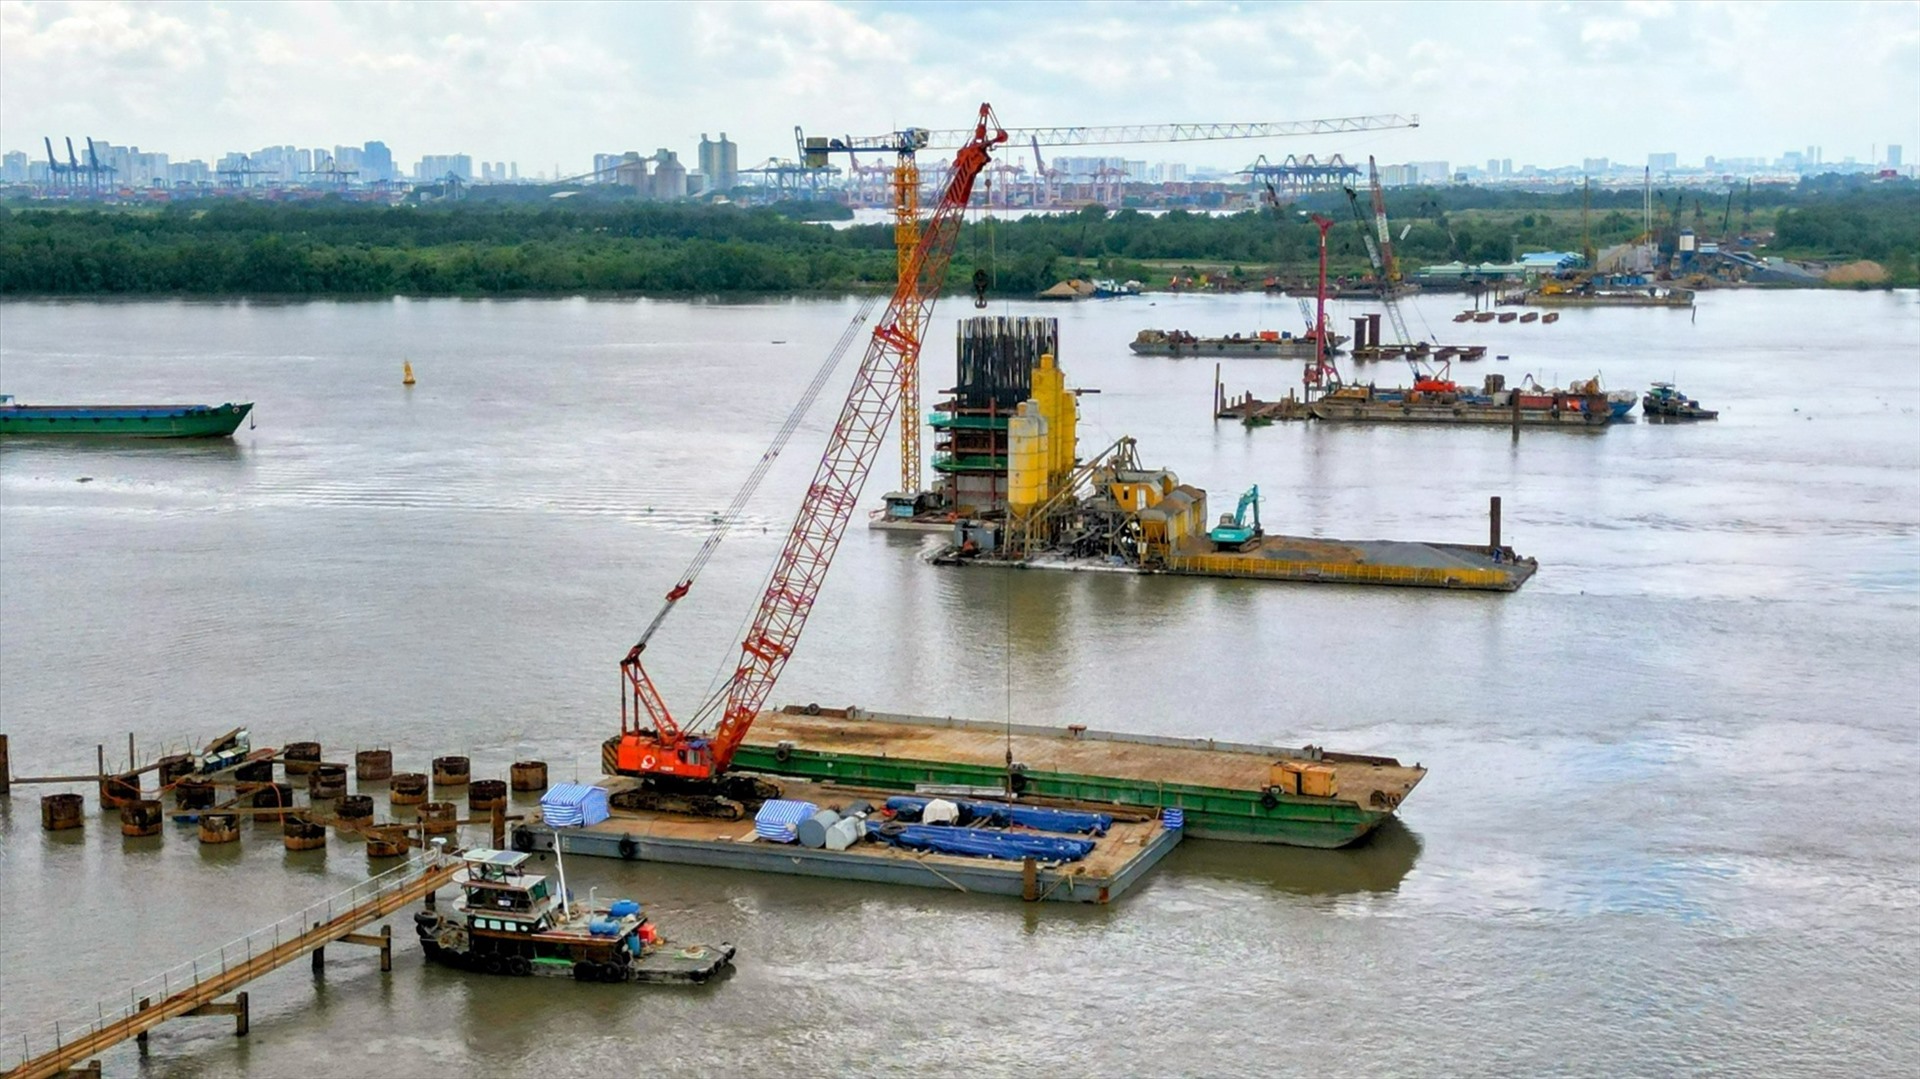 Thi công cầu Nhơn Trạch bắc qua sông Đồng Nai thuộc tuyến Vành đai 3 TPHCM. Ảnh: Hữu Chánh